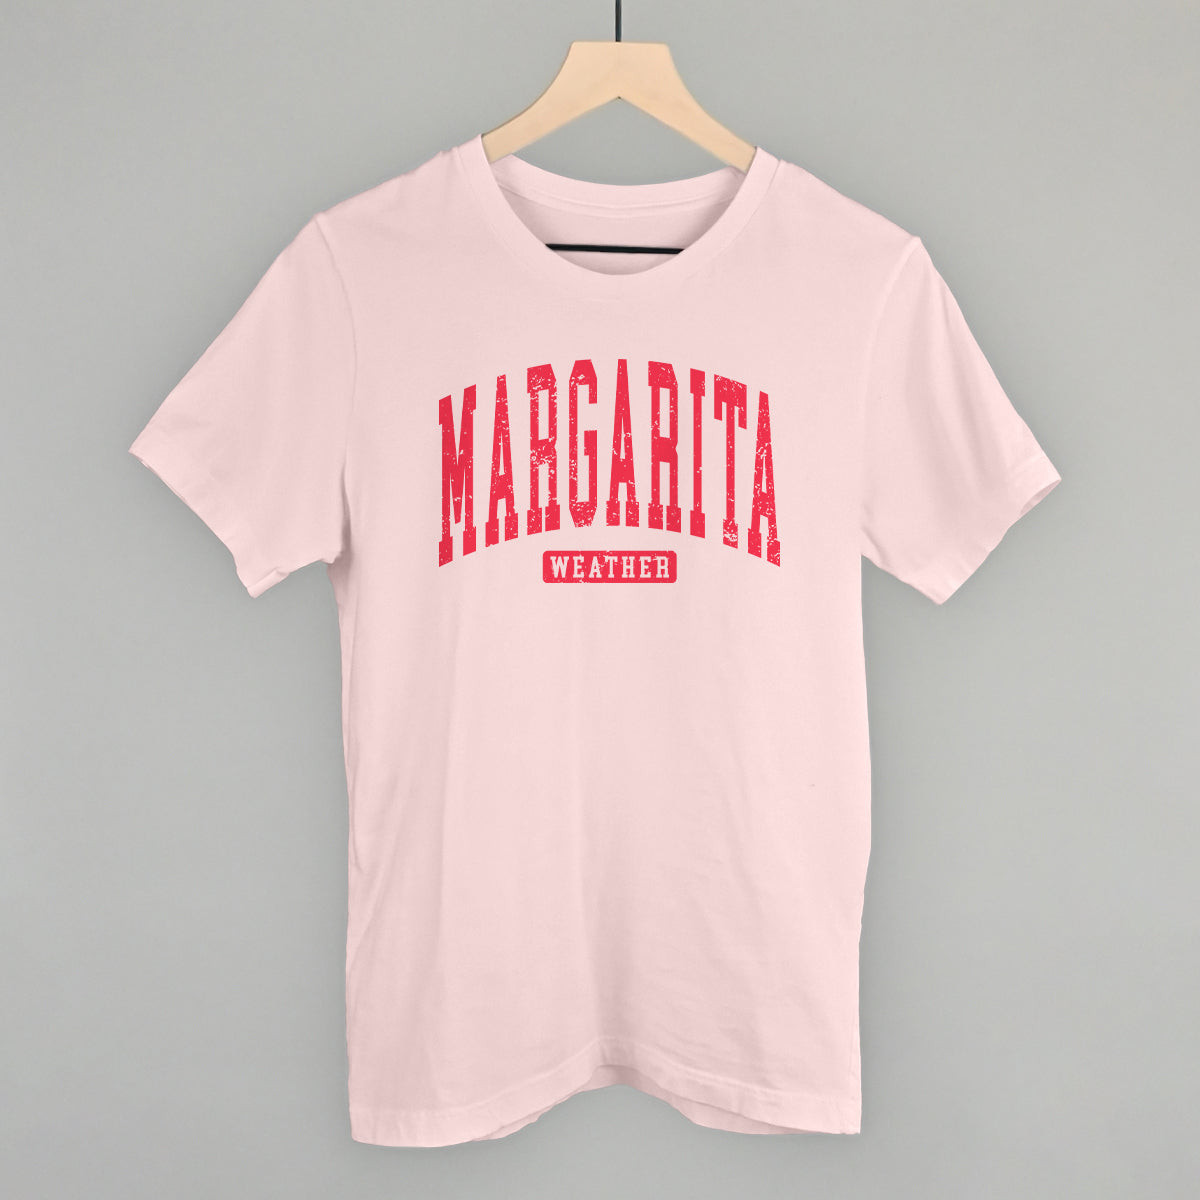 Margarita Weather Collegiate